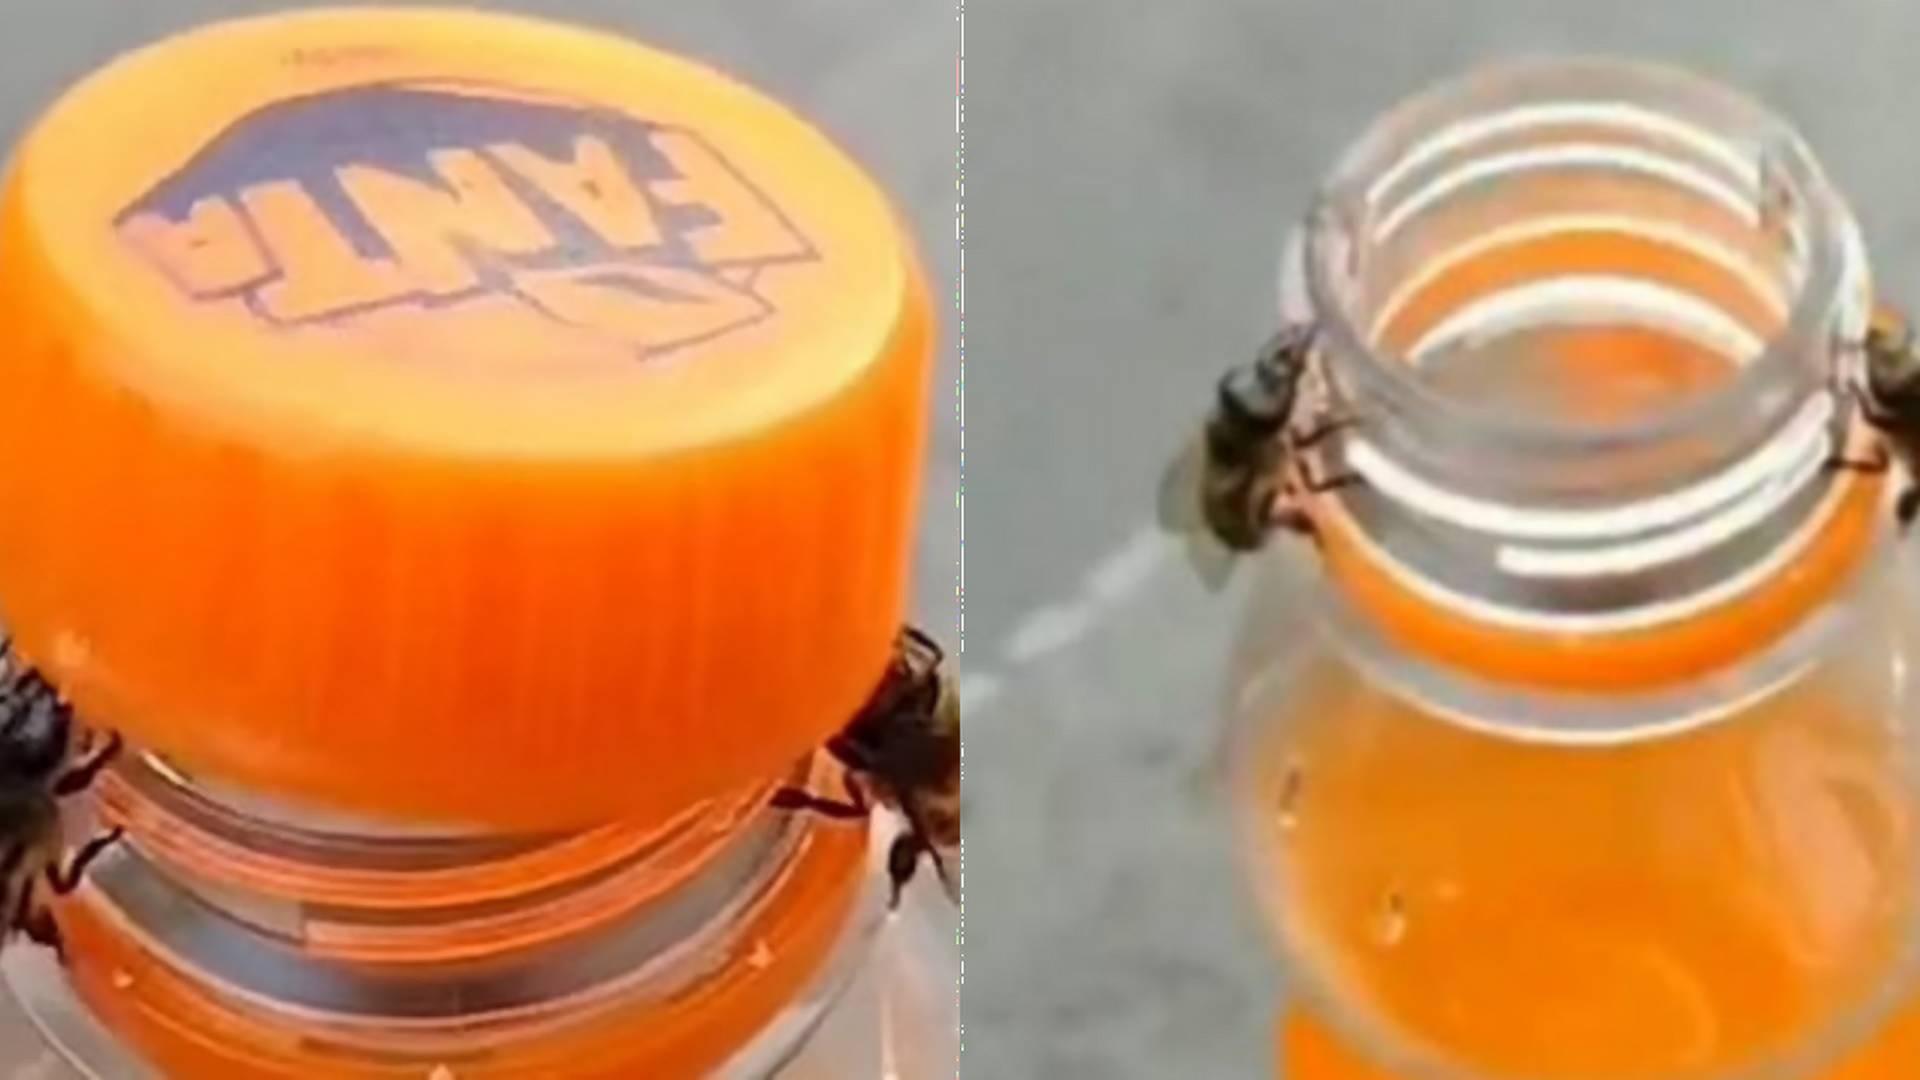 Šikovná spolupráca alebo podvrh? Video zachytáva, ako včely otvárajú fľašu s nápojom